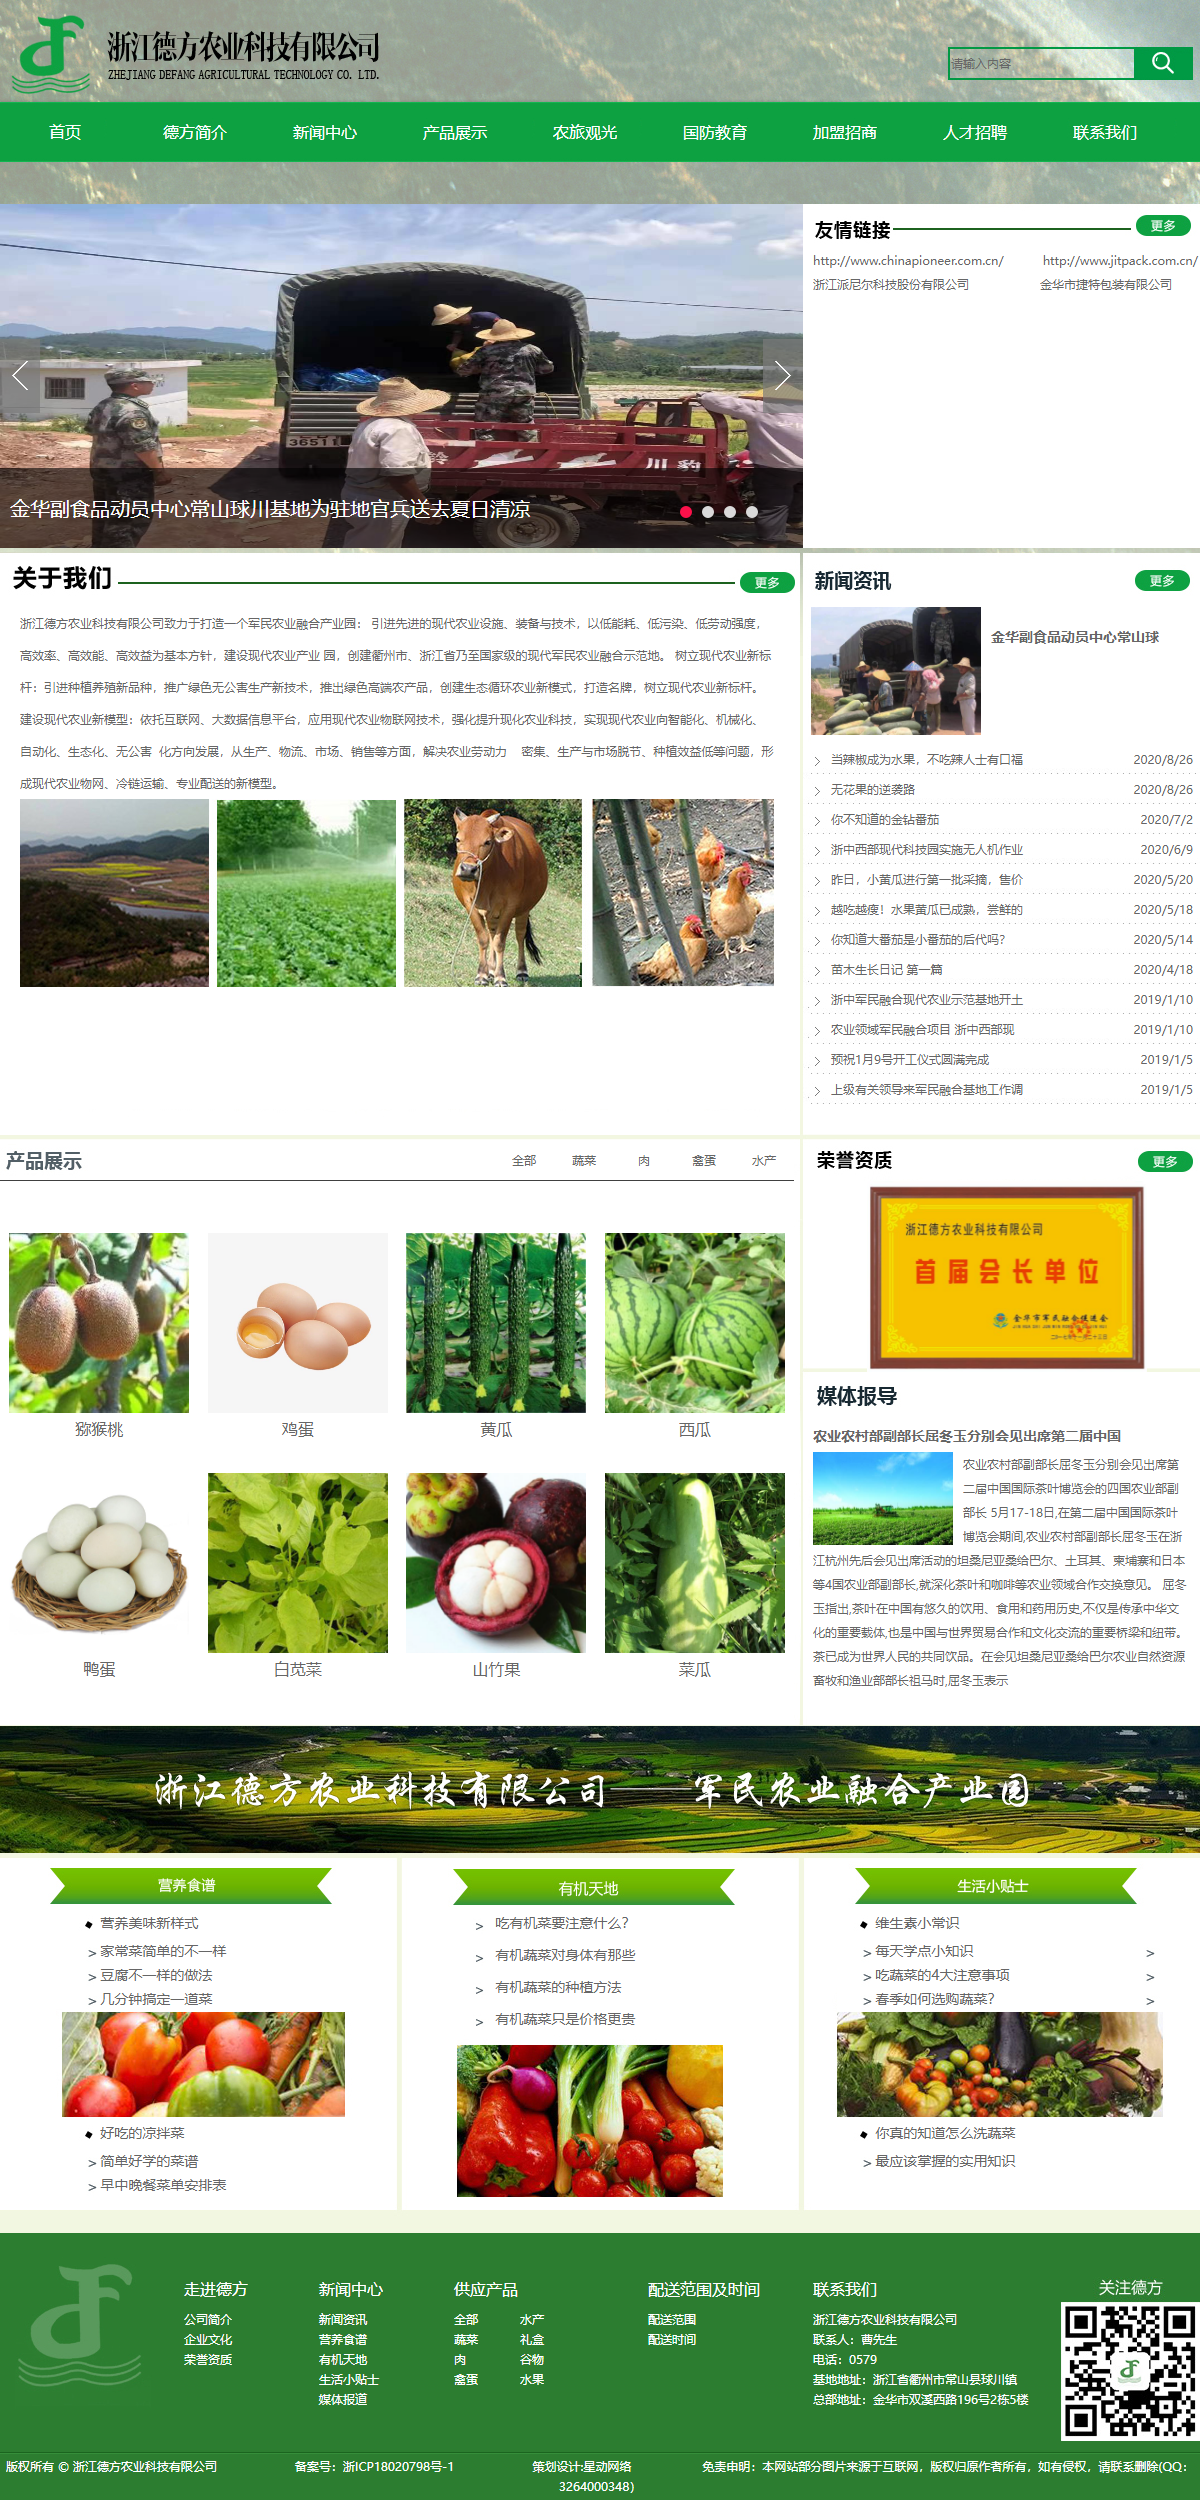 浙江德方农业科技有限公司网站案例